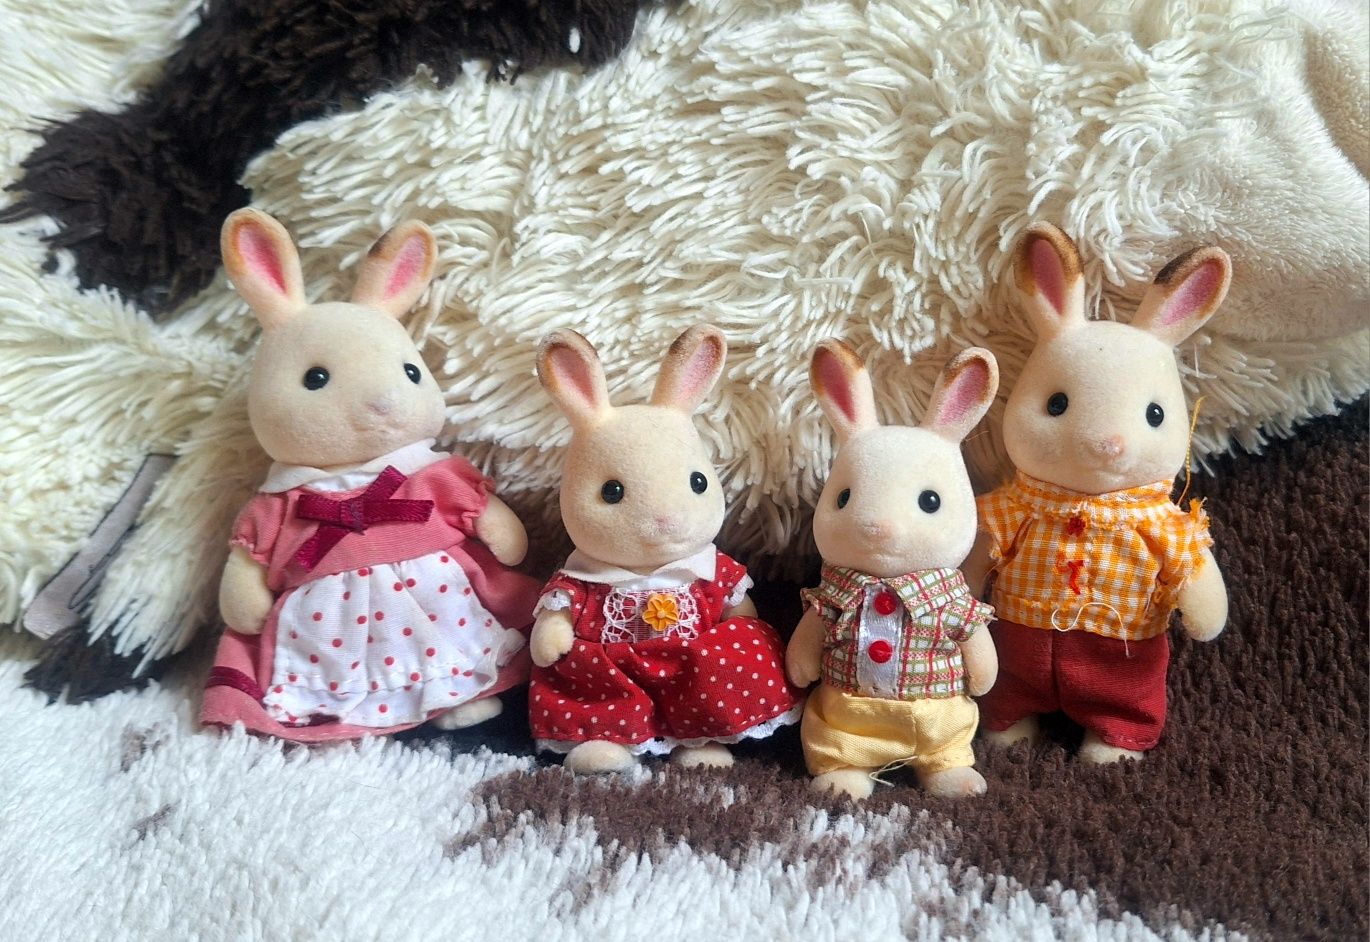 Игровой набор Sylvanian Families Семья шоколадных кроликов ОРИГИНАЛ